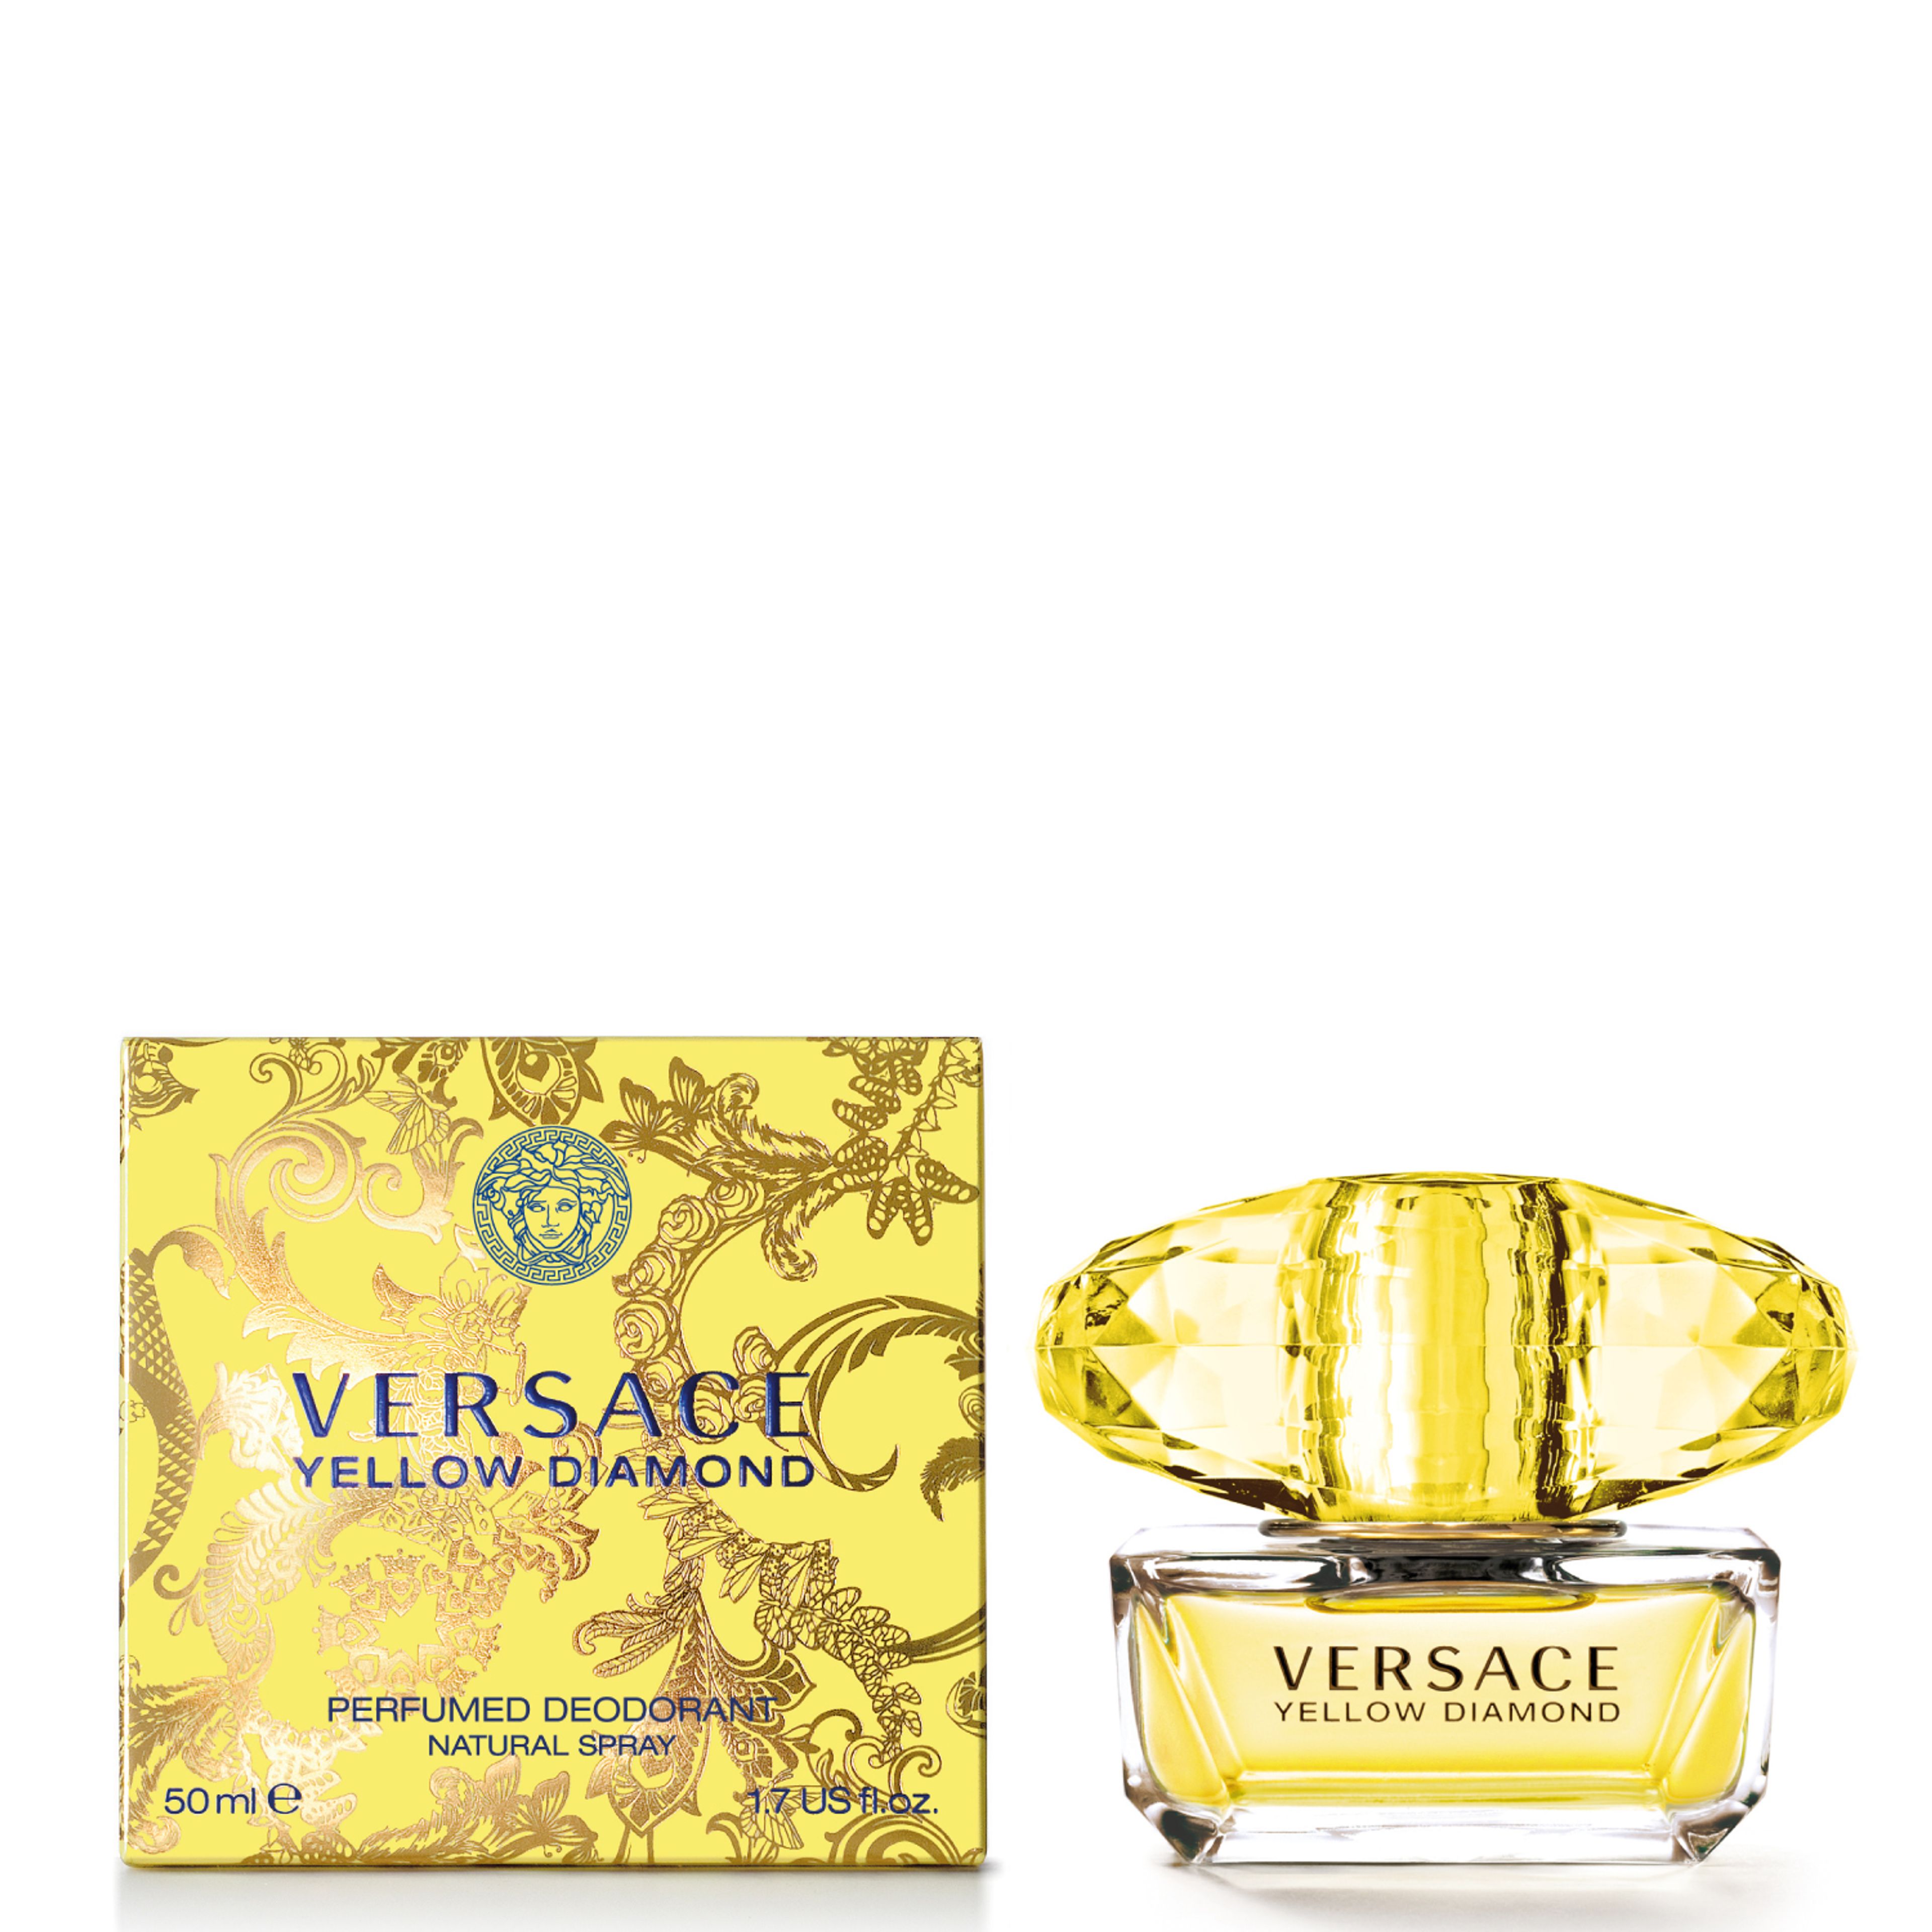 Versace Yellow Diamond Perfumed Deodorant Spray 1